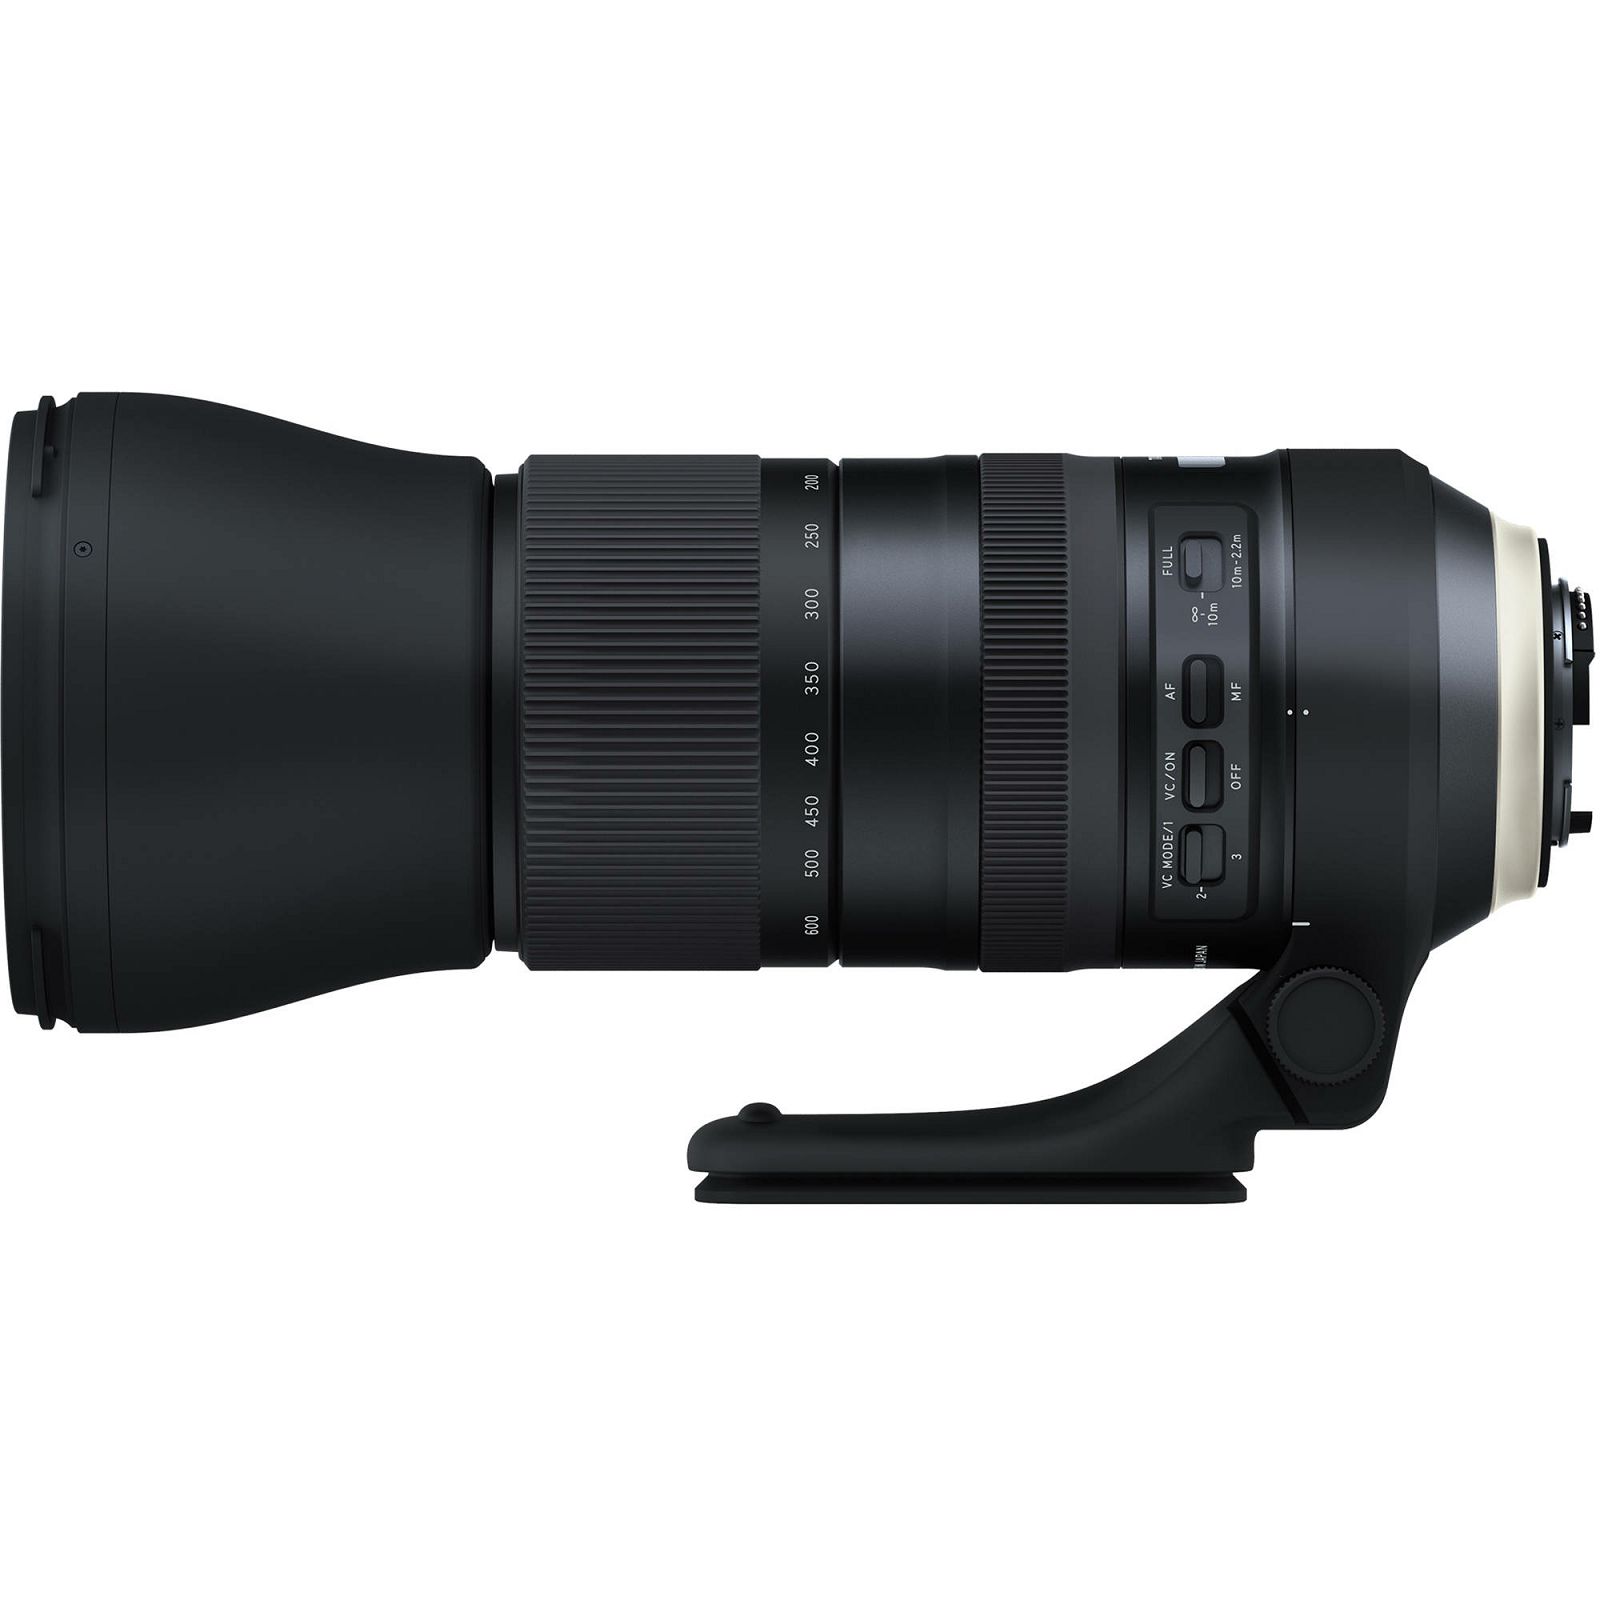 Tamron SP AF 150-600mm f/5-6.3 Di VC USD G2 telefoto objektiv za Nikon FX (A022N)